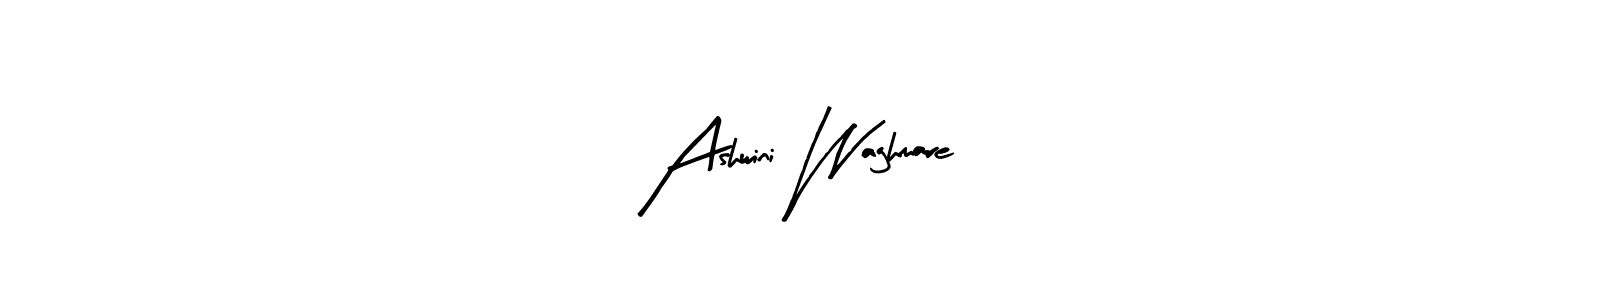 Make a beautiful signature design for name Ashwini Waghmare. Use this online signature maker to create a handwritten signature for free. Ashwini Waghmare signature style 8 images and pictures png